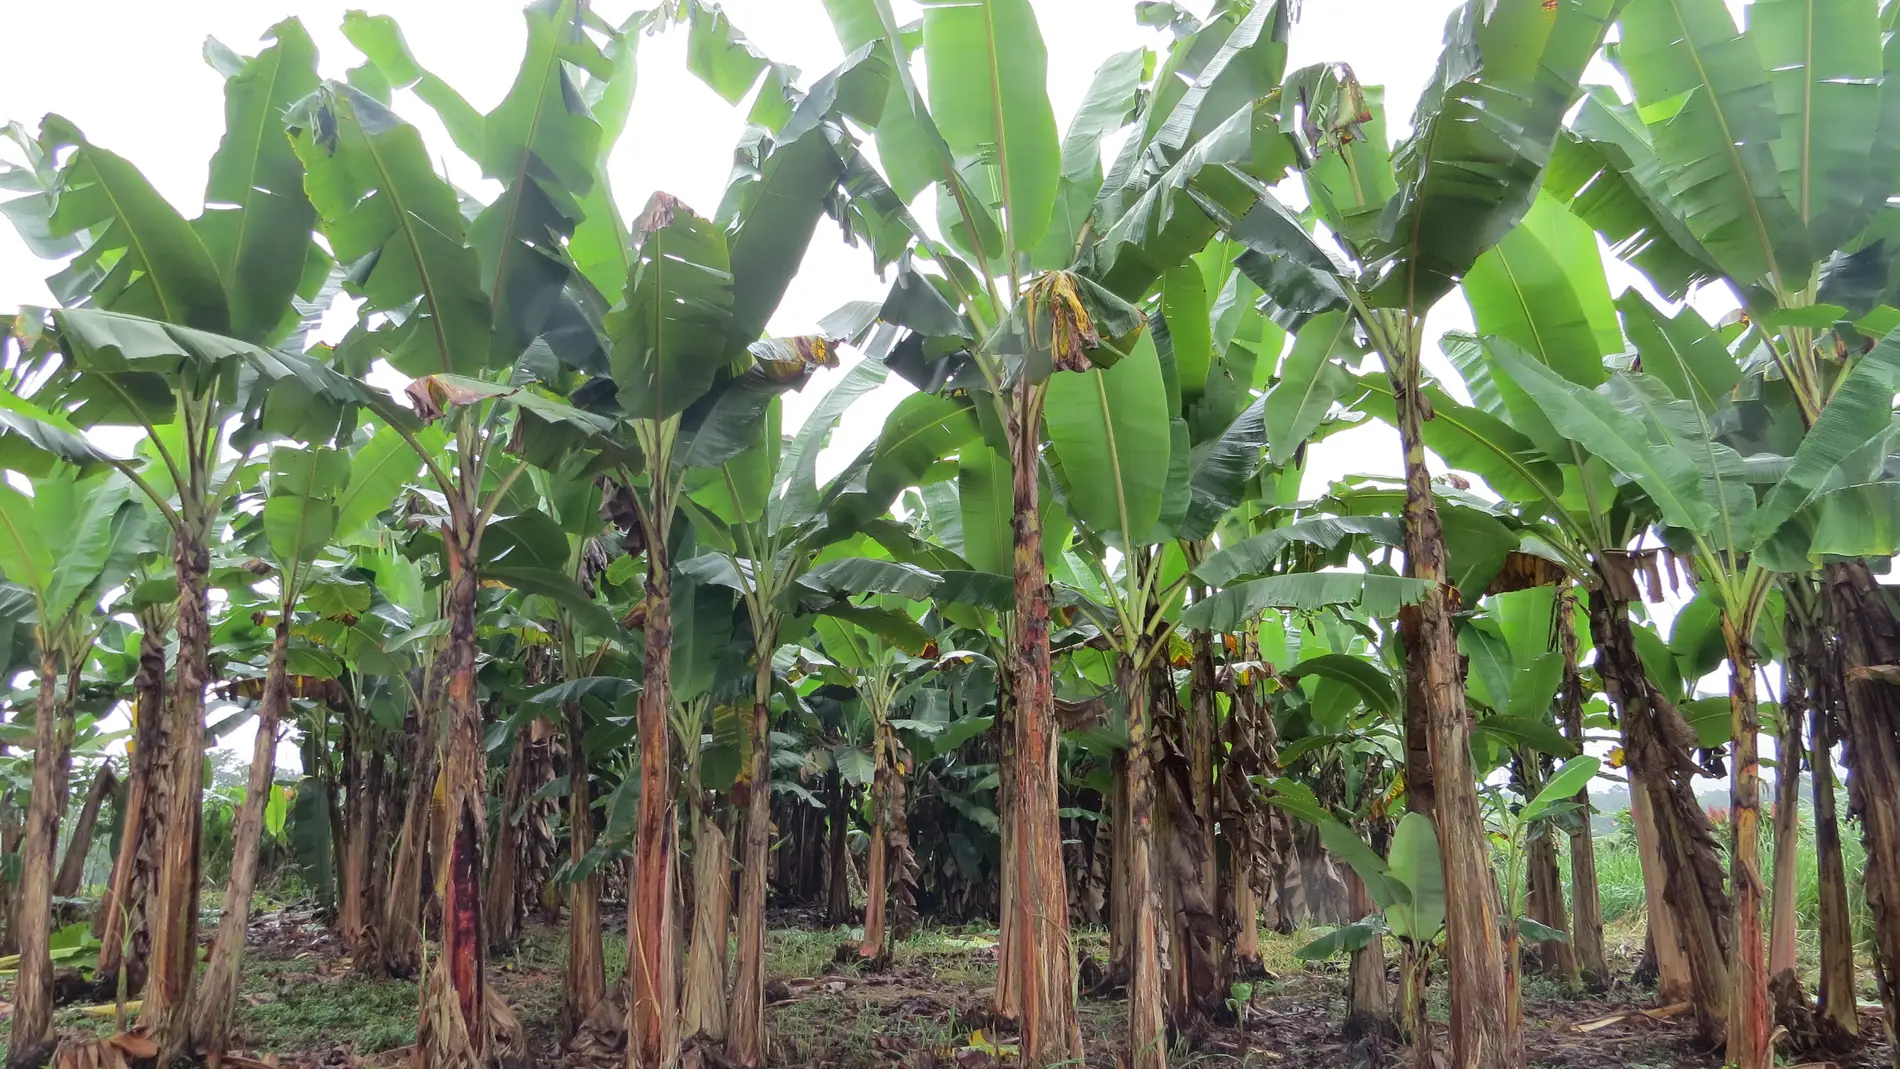 Plantación de banano en Ecuador. Fuente: